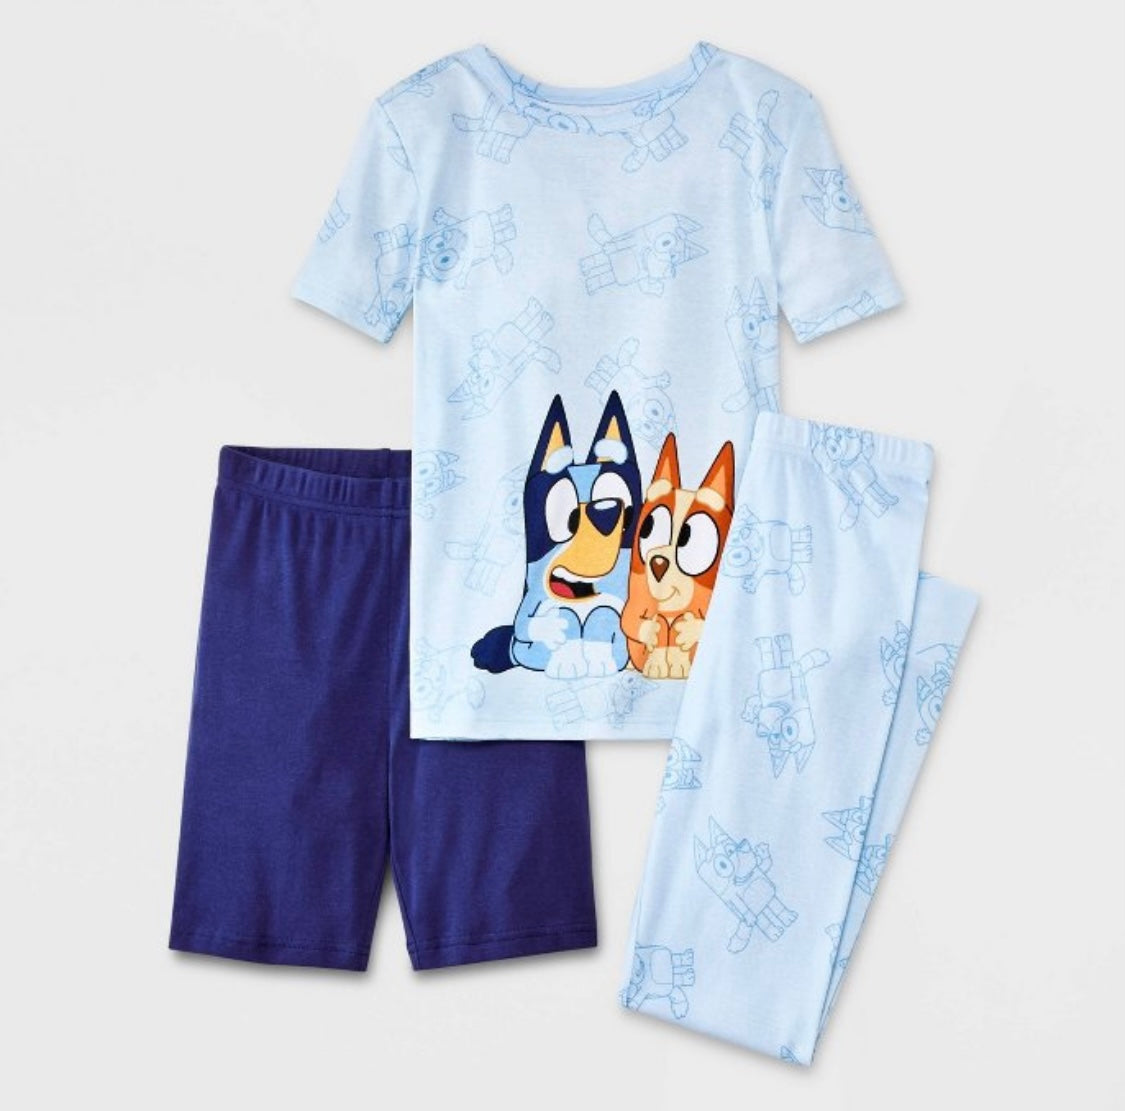 Pijama Bluey Niño Personalizado